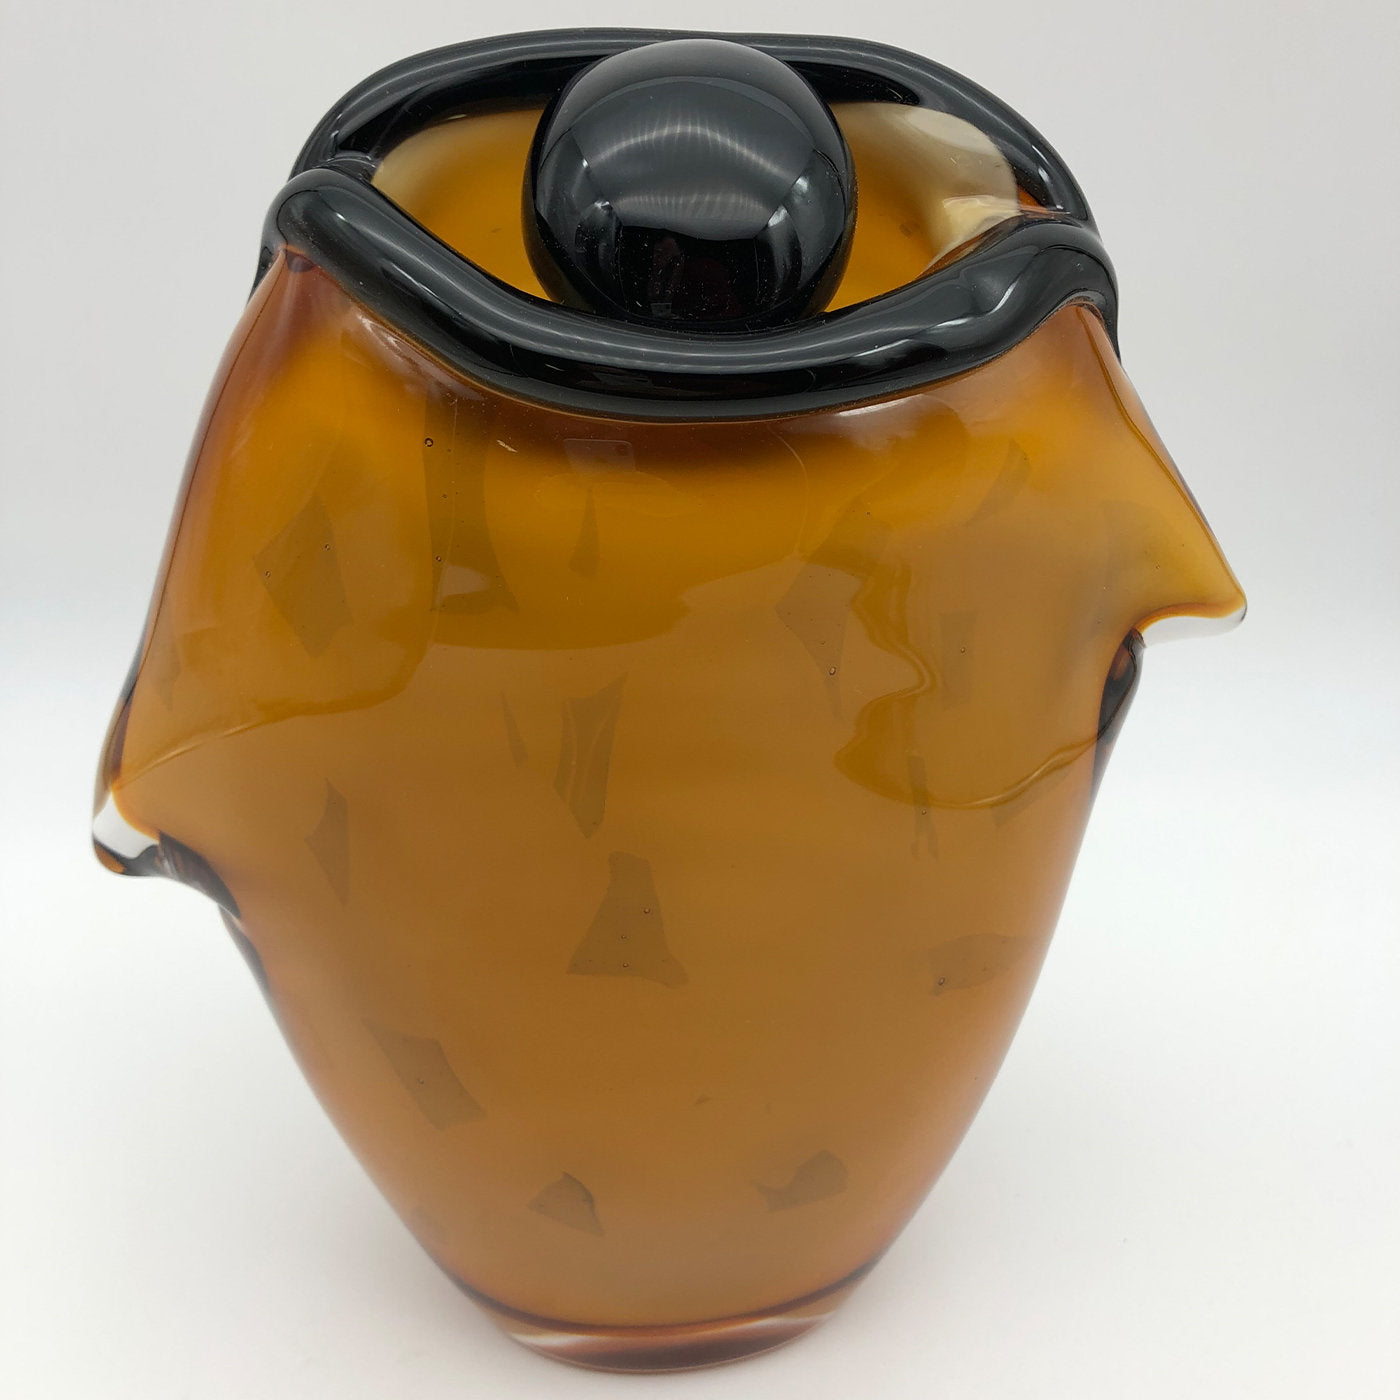 Vase d'ambre "The Eye" de Toso Cristiano - Vue alternative 1